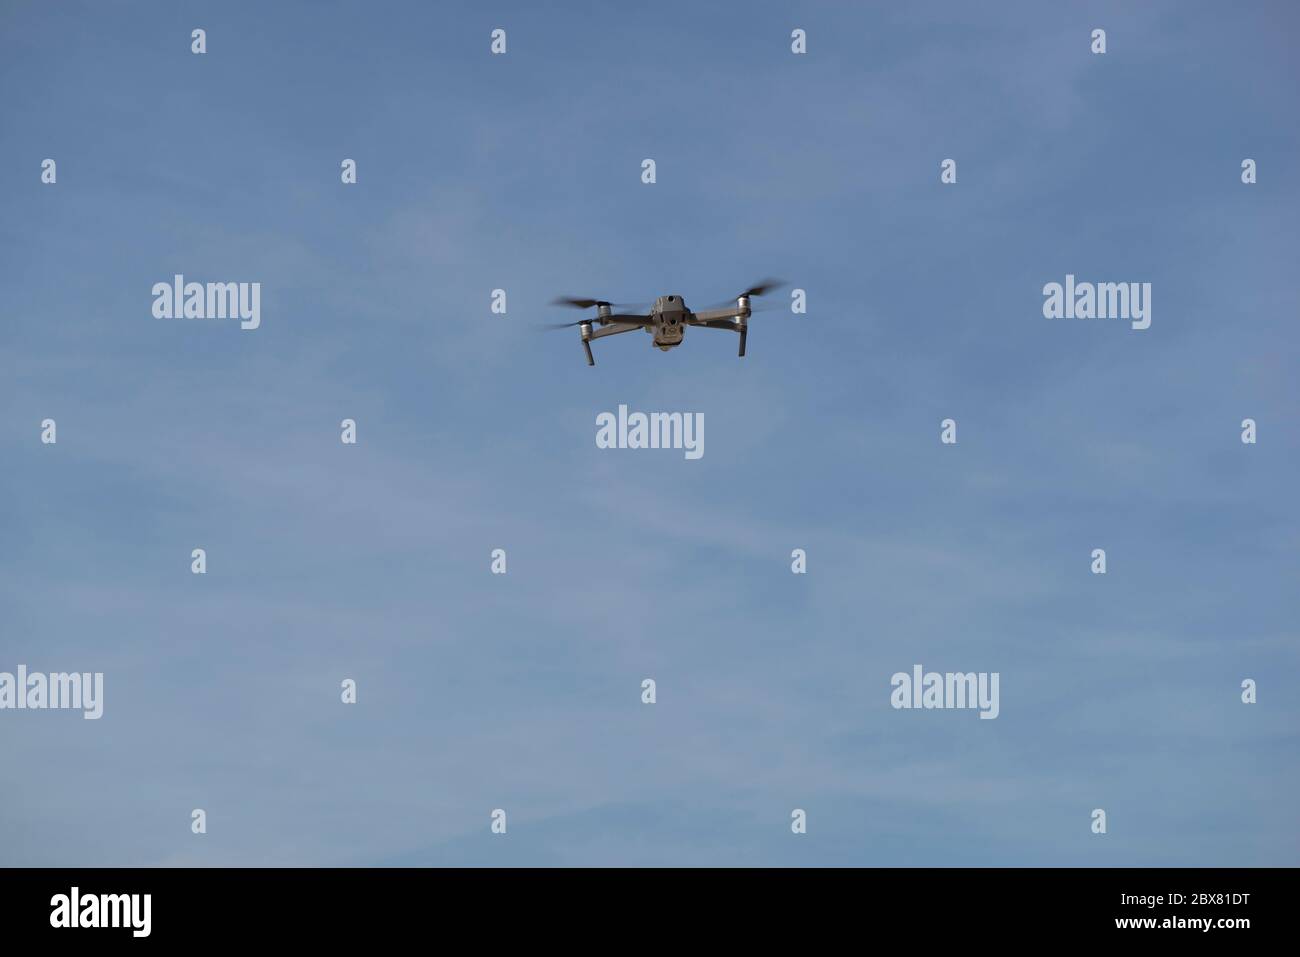 Drohne fliegt in blauem Himmel mit Wolken im Hintergrund. Drohne fliegt über dem Himmel in wolkig-blauem Himmel. Drohne Quad Copter mit hochauflösender digitaler Kamera Stockfoto